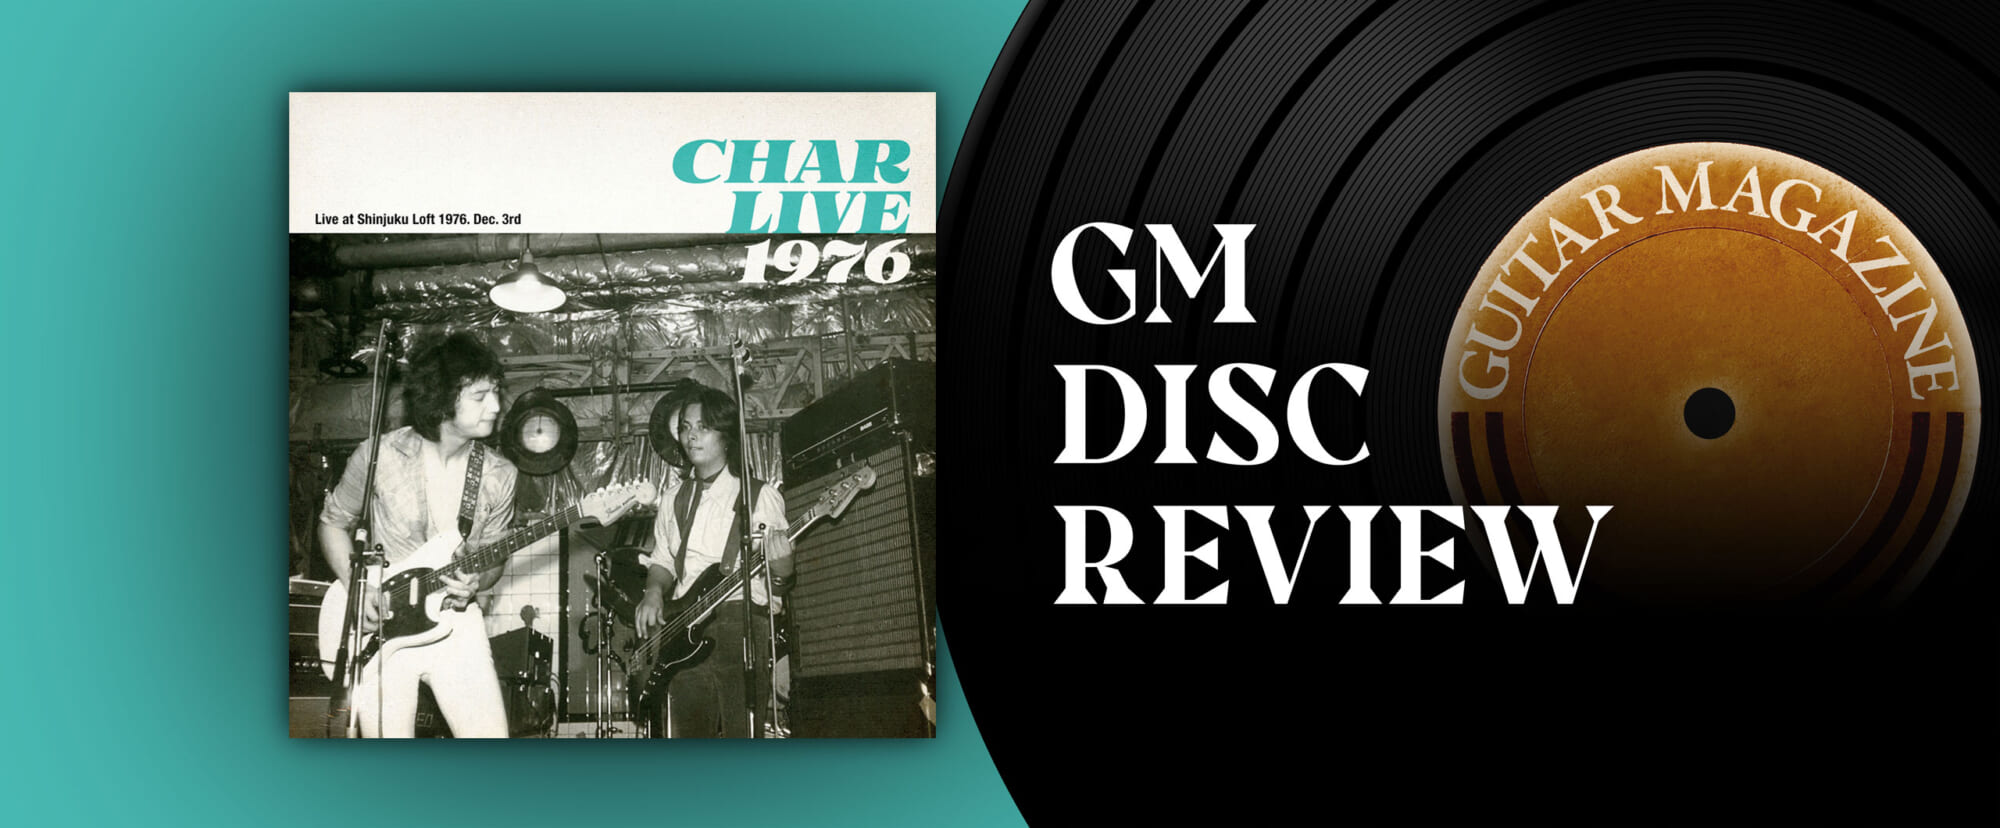 ディスク・レビュー『Char Live 1976』Char